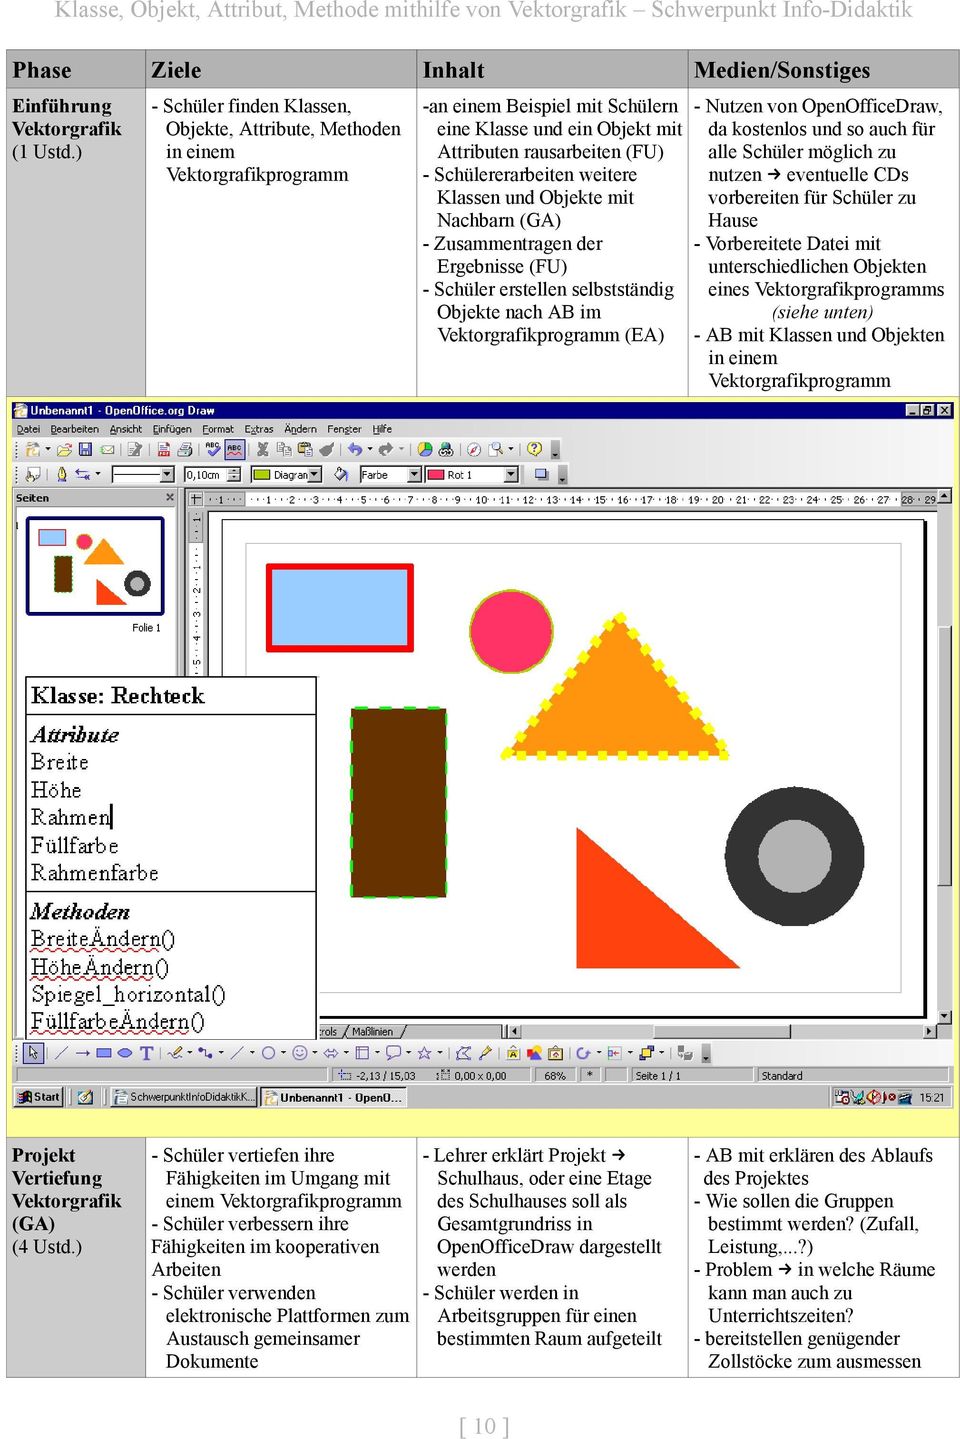 weitere Klassen und Objekte mit Nachbarn (GA) - Zusammentragen der Ergebnisse (FU) - Schüler erstellen selbstständig Objekte nach AB im Vektorgrafikprogramm (EA) - Nutzen von OpenOfficeDraw, da